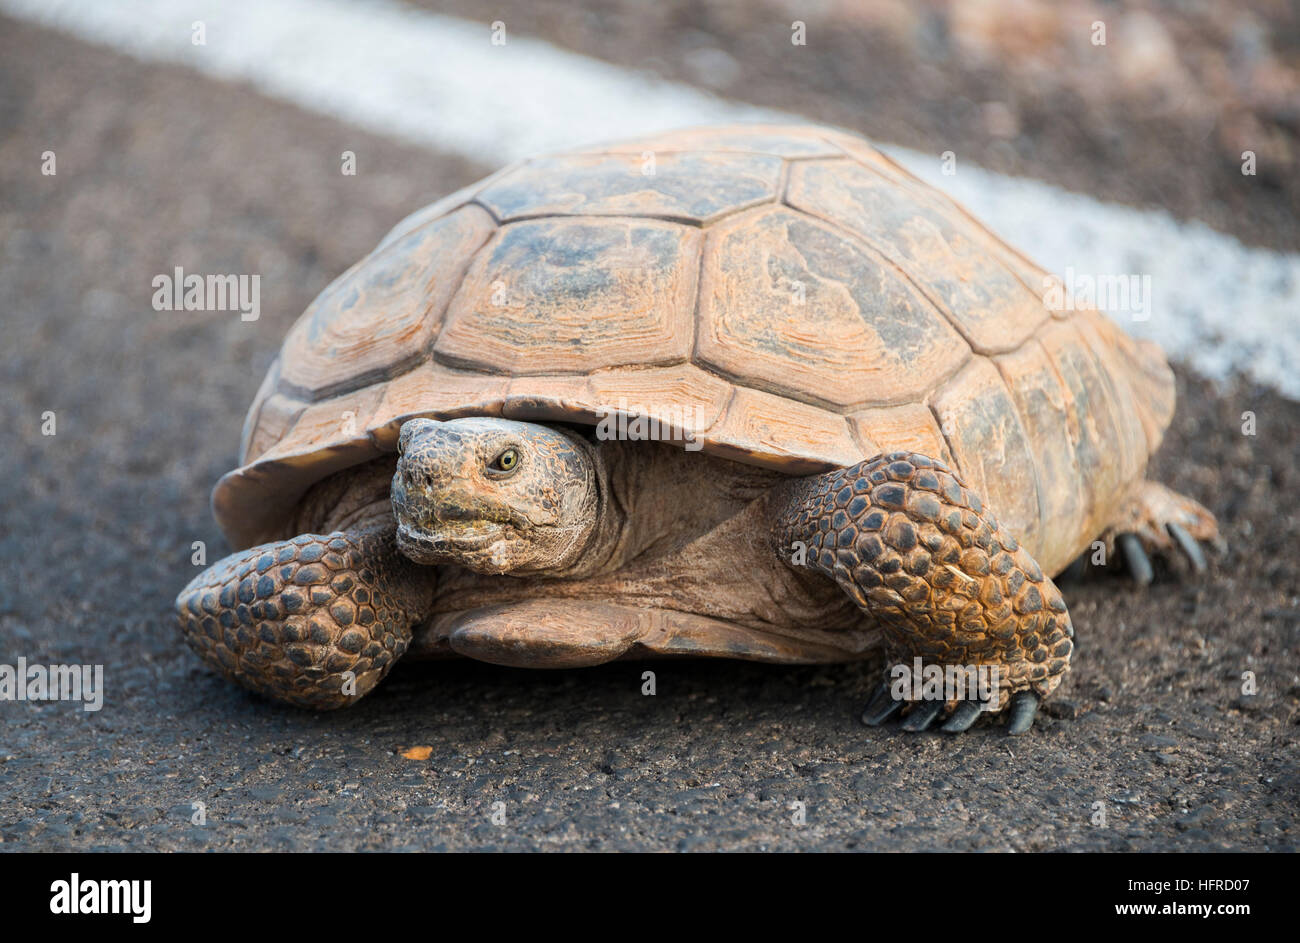 Agassiz il deserto della tartaruga (Gopherus agassizii) Attraversamento stradale, la Valle del Fuoco, Deserto Mojave, Nevada, STATI UNITI D'AMERICA Foto Stock